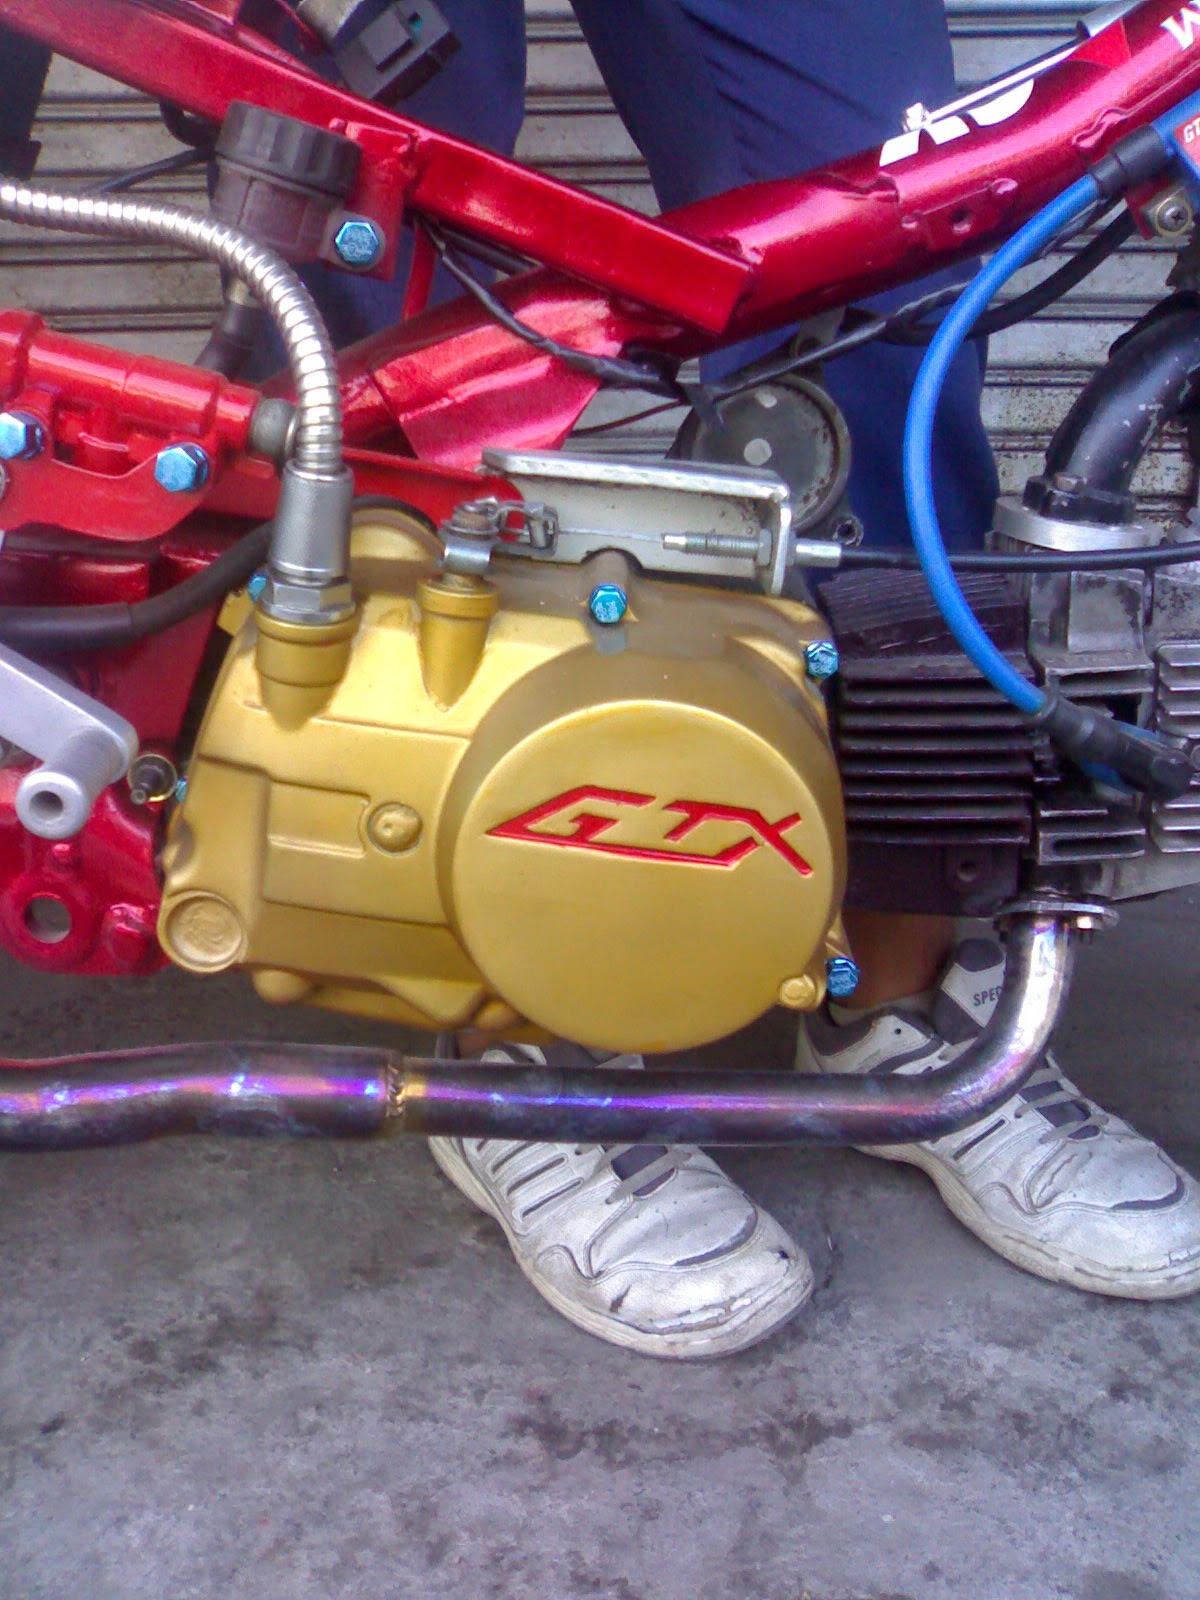 Koleksi Gambar Motor Drag Supra X 100cc Terlengkap Janur Modifikasi